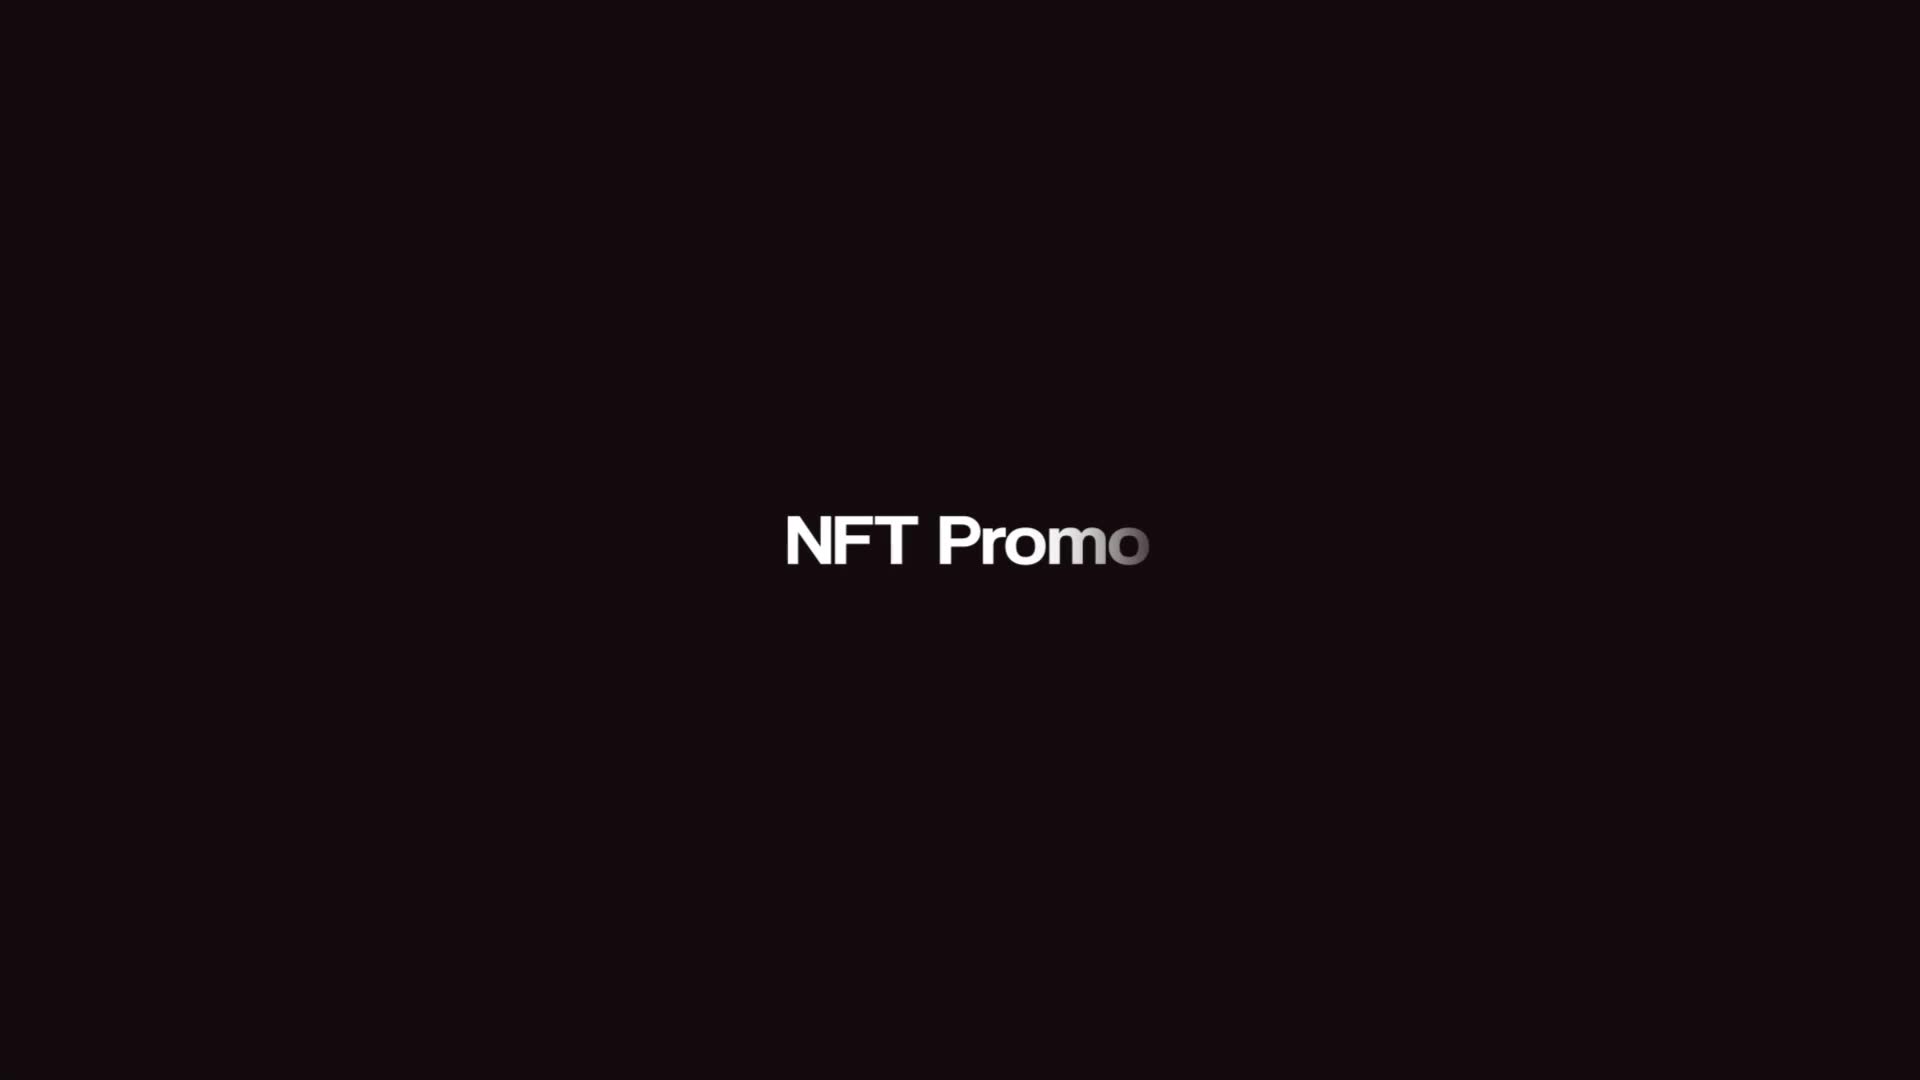 NFT Promo For Premiere Pro Videohive 38007124 Premiere Pro Image 1